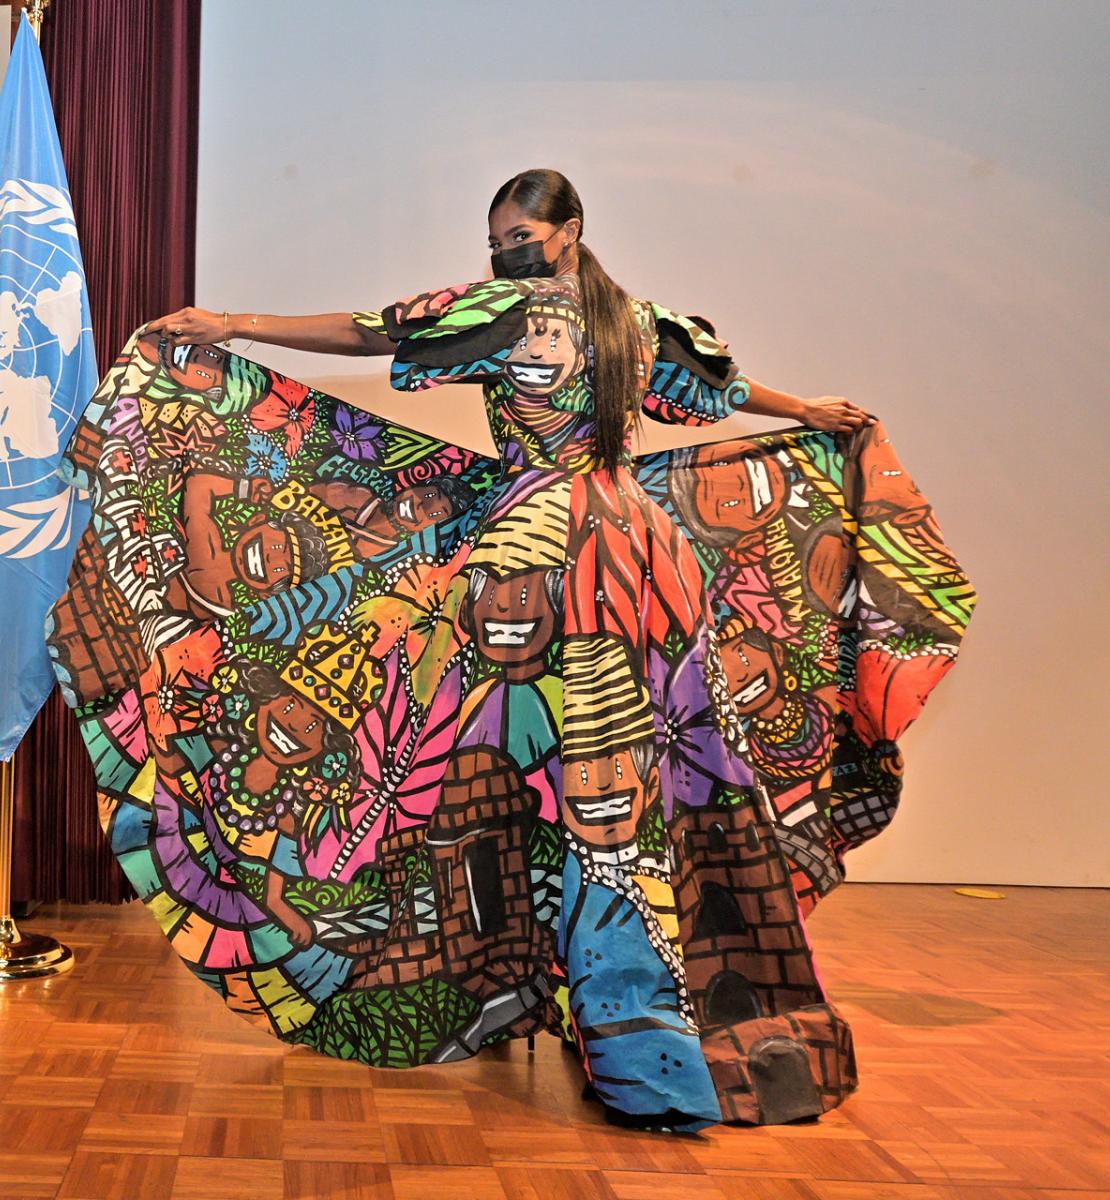 Una mujer está de pie en un escenario mostrando un patrón único en su colorido vestido.